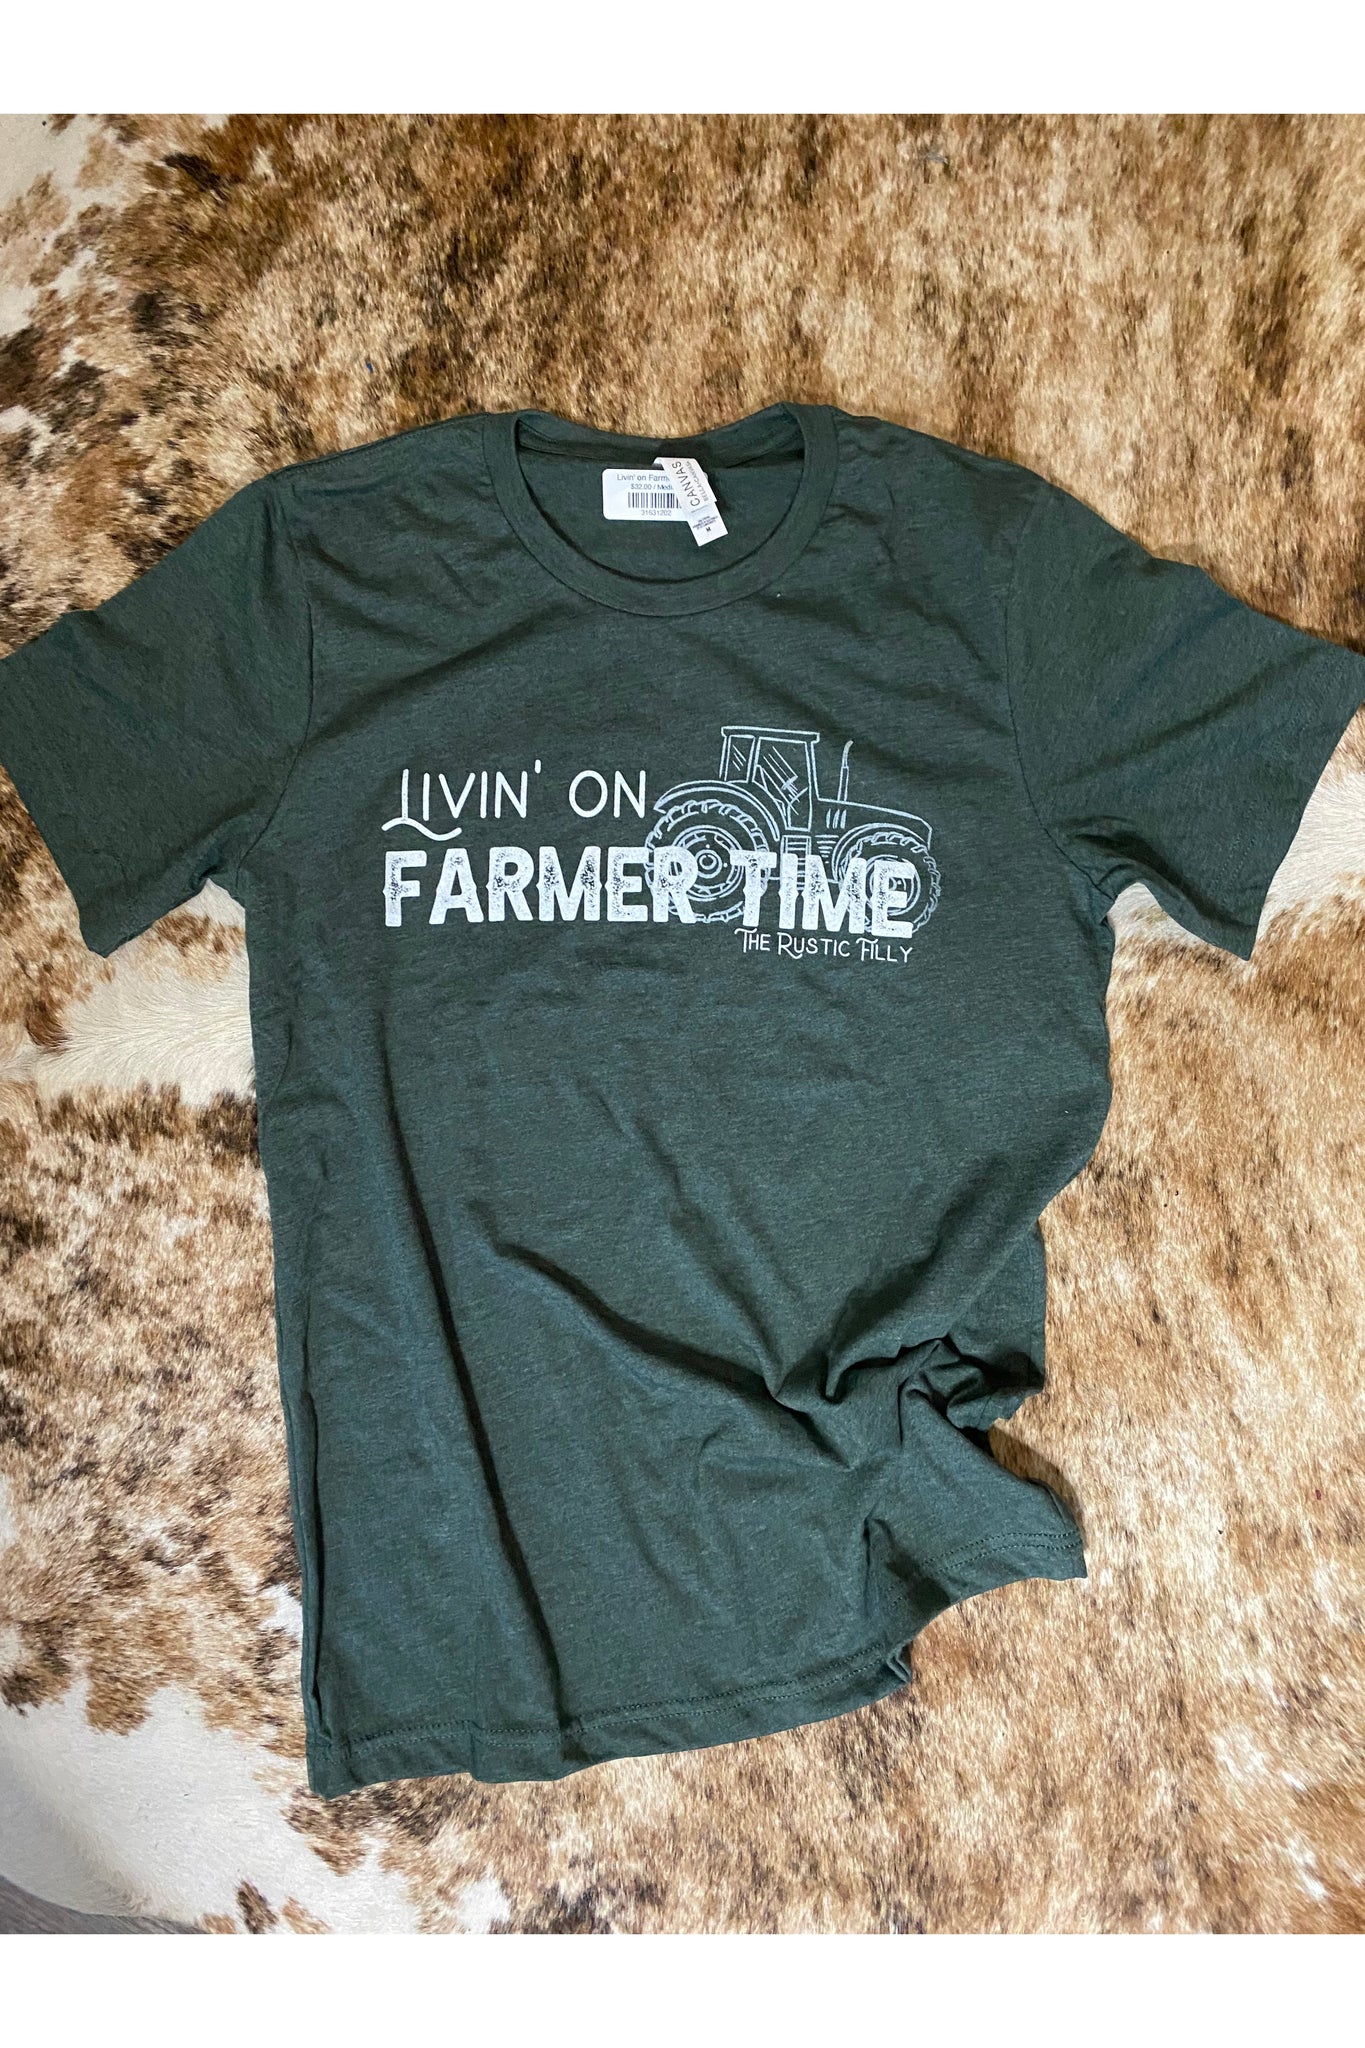 Livin' on Farmer Time